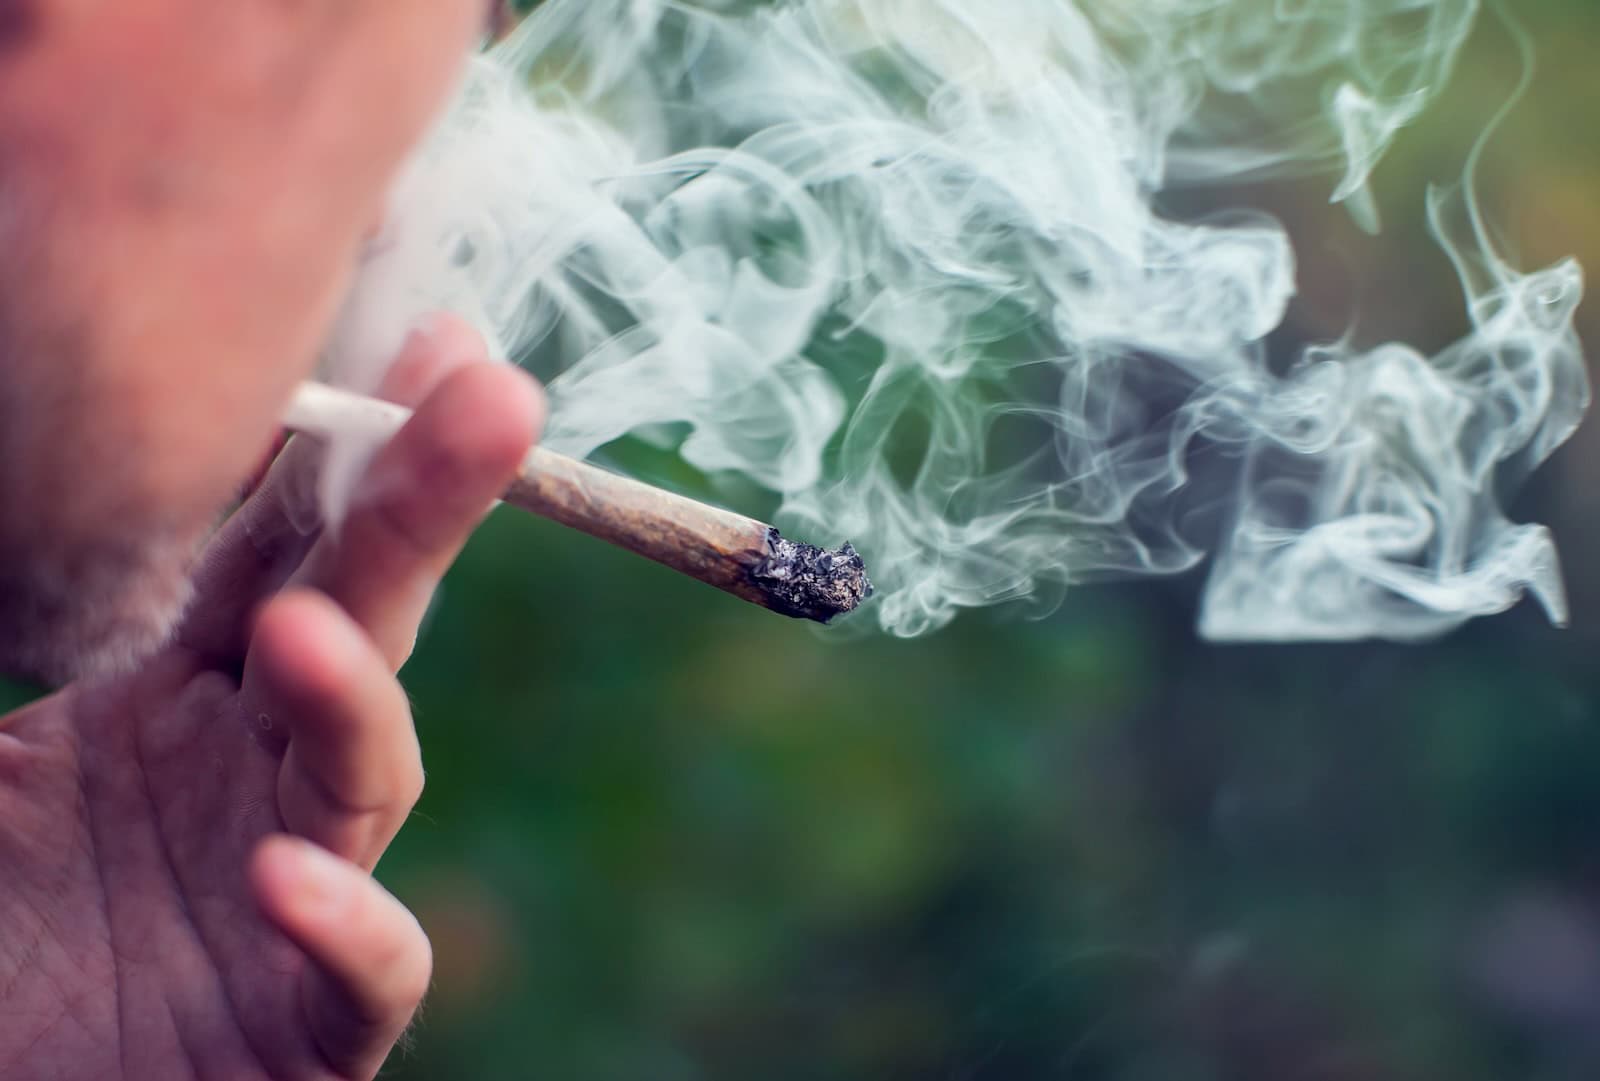 Risiken-bei-Mischkonsum-von-Cannabis-und-Tabak